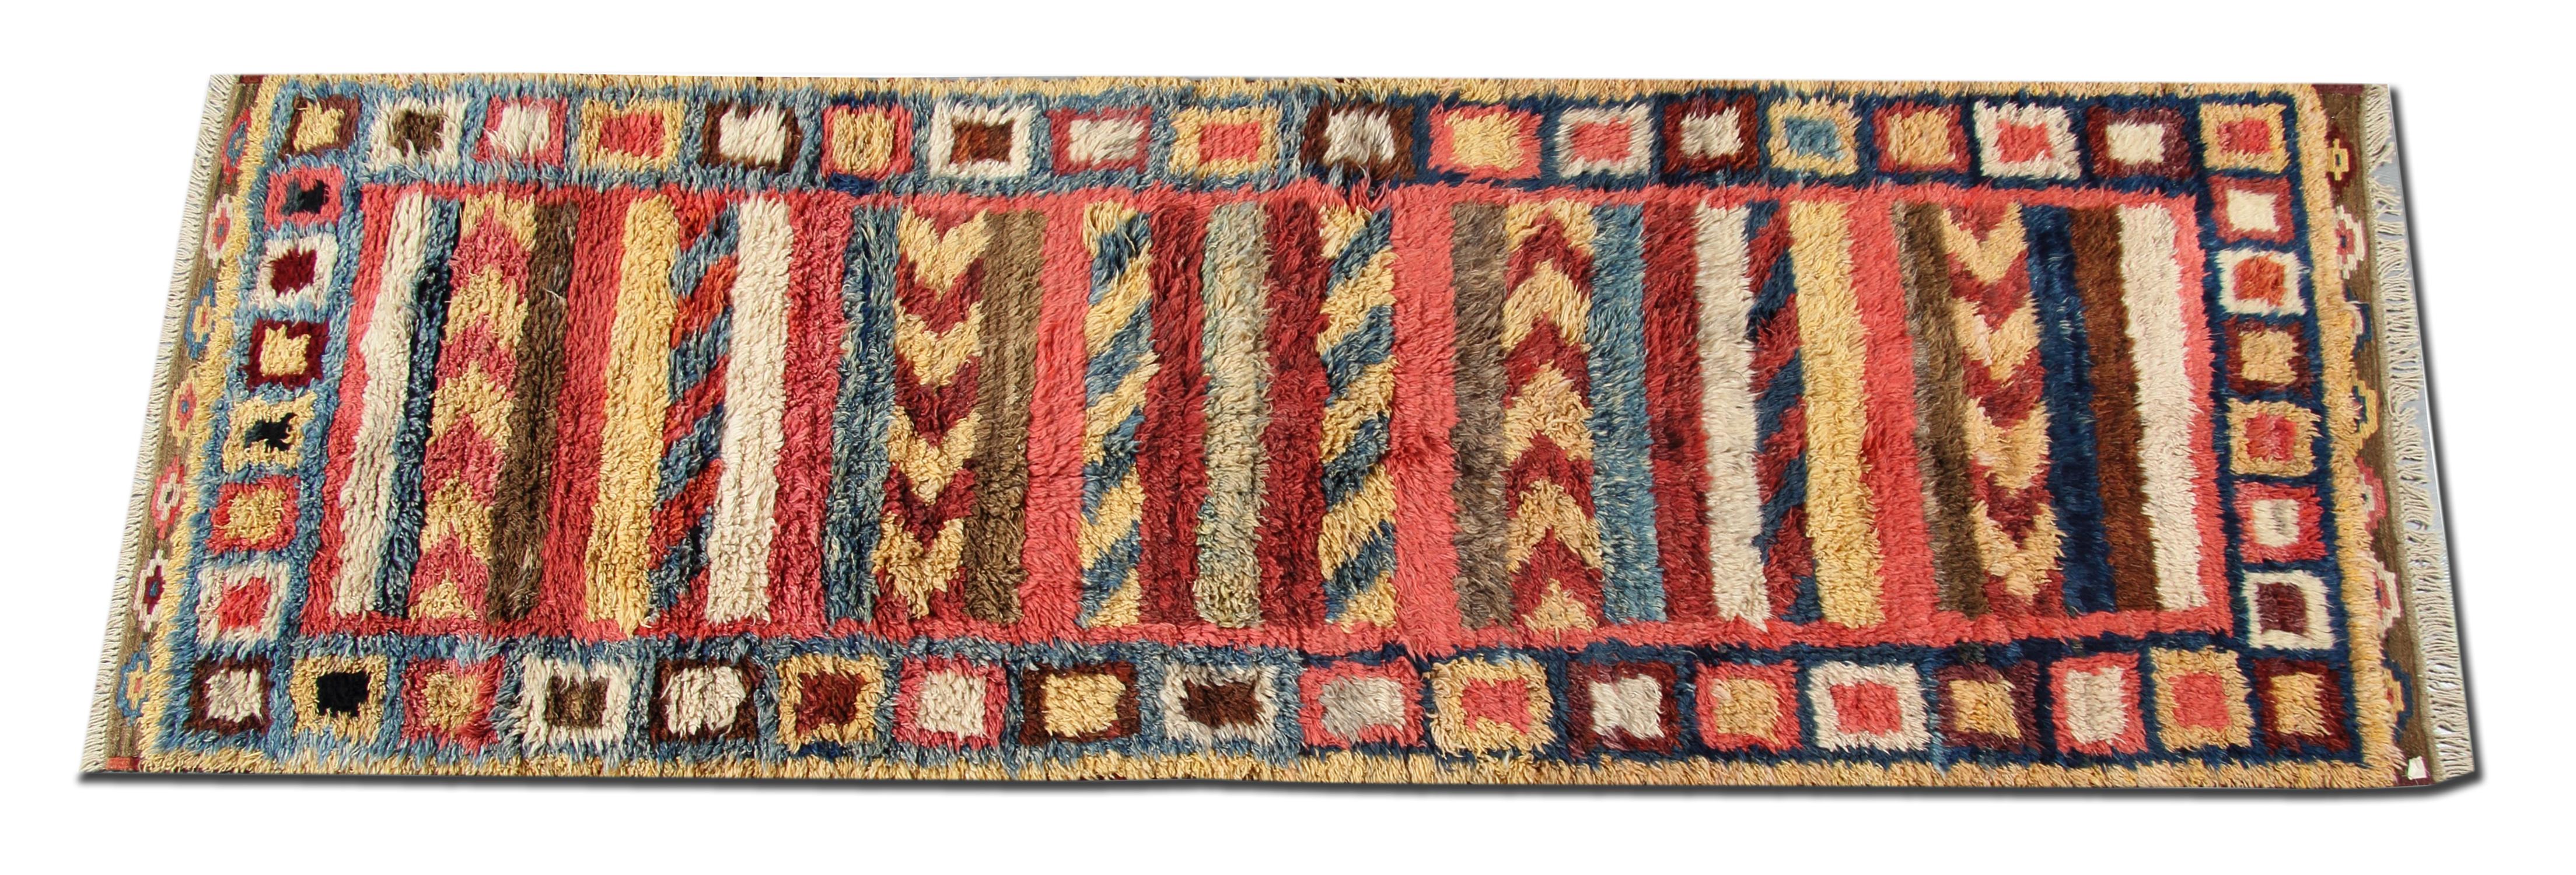 Dieser handgefertigte Teppich ist ein Beispiel für handgewebte Teppiche aus Marokko. Mit Motiven, die in der Region Marokko traditionell sind. Marokko ist berühmt für seine primitiven traditionellen Teppiche mit langen Wollfloren. Für die